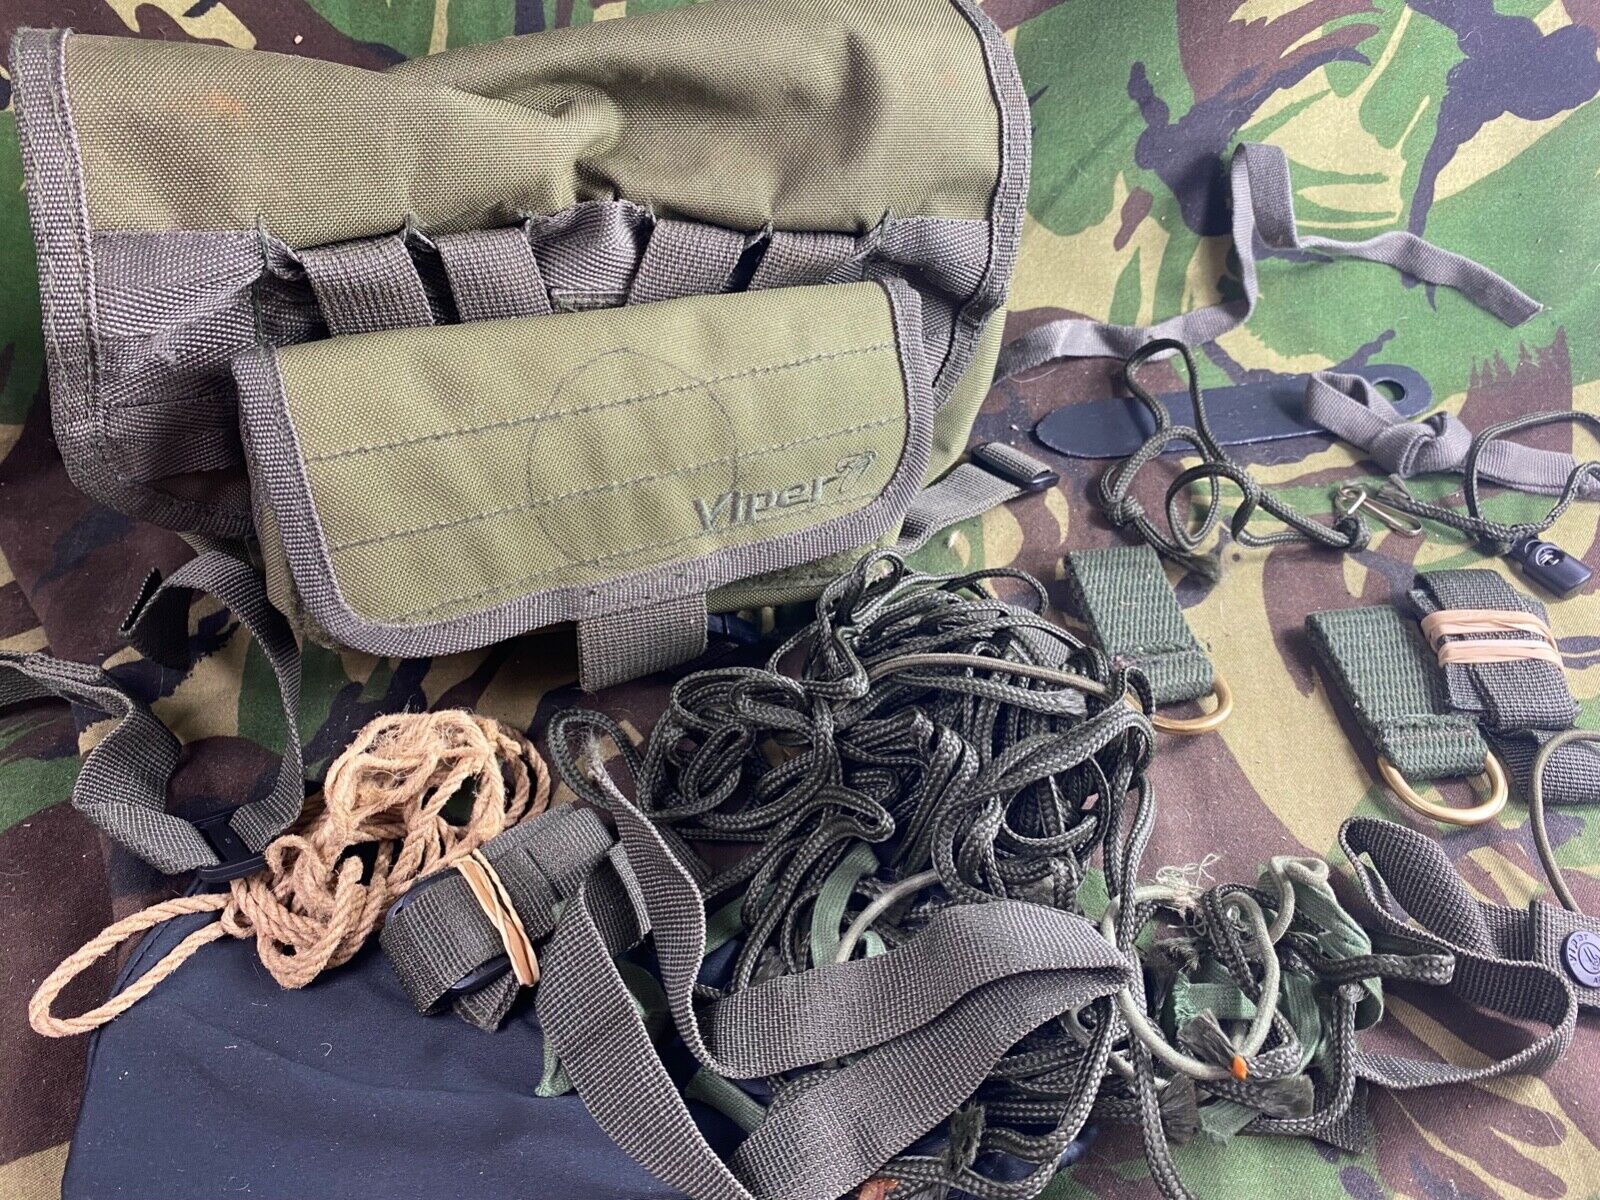 British Army / Viper Tactical Medics / Shotgun Shooters Twin Pack Kit Bags.